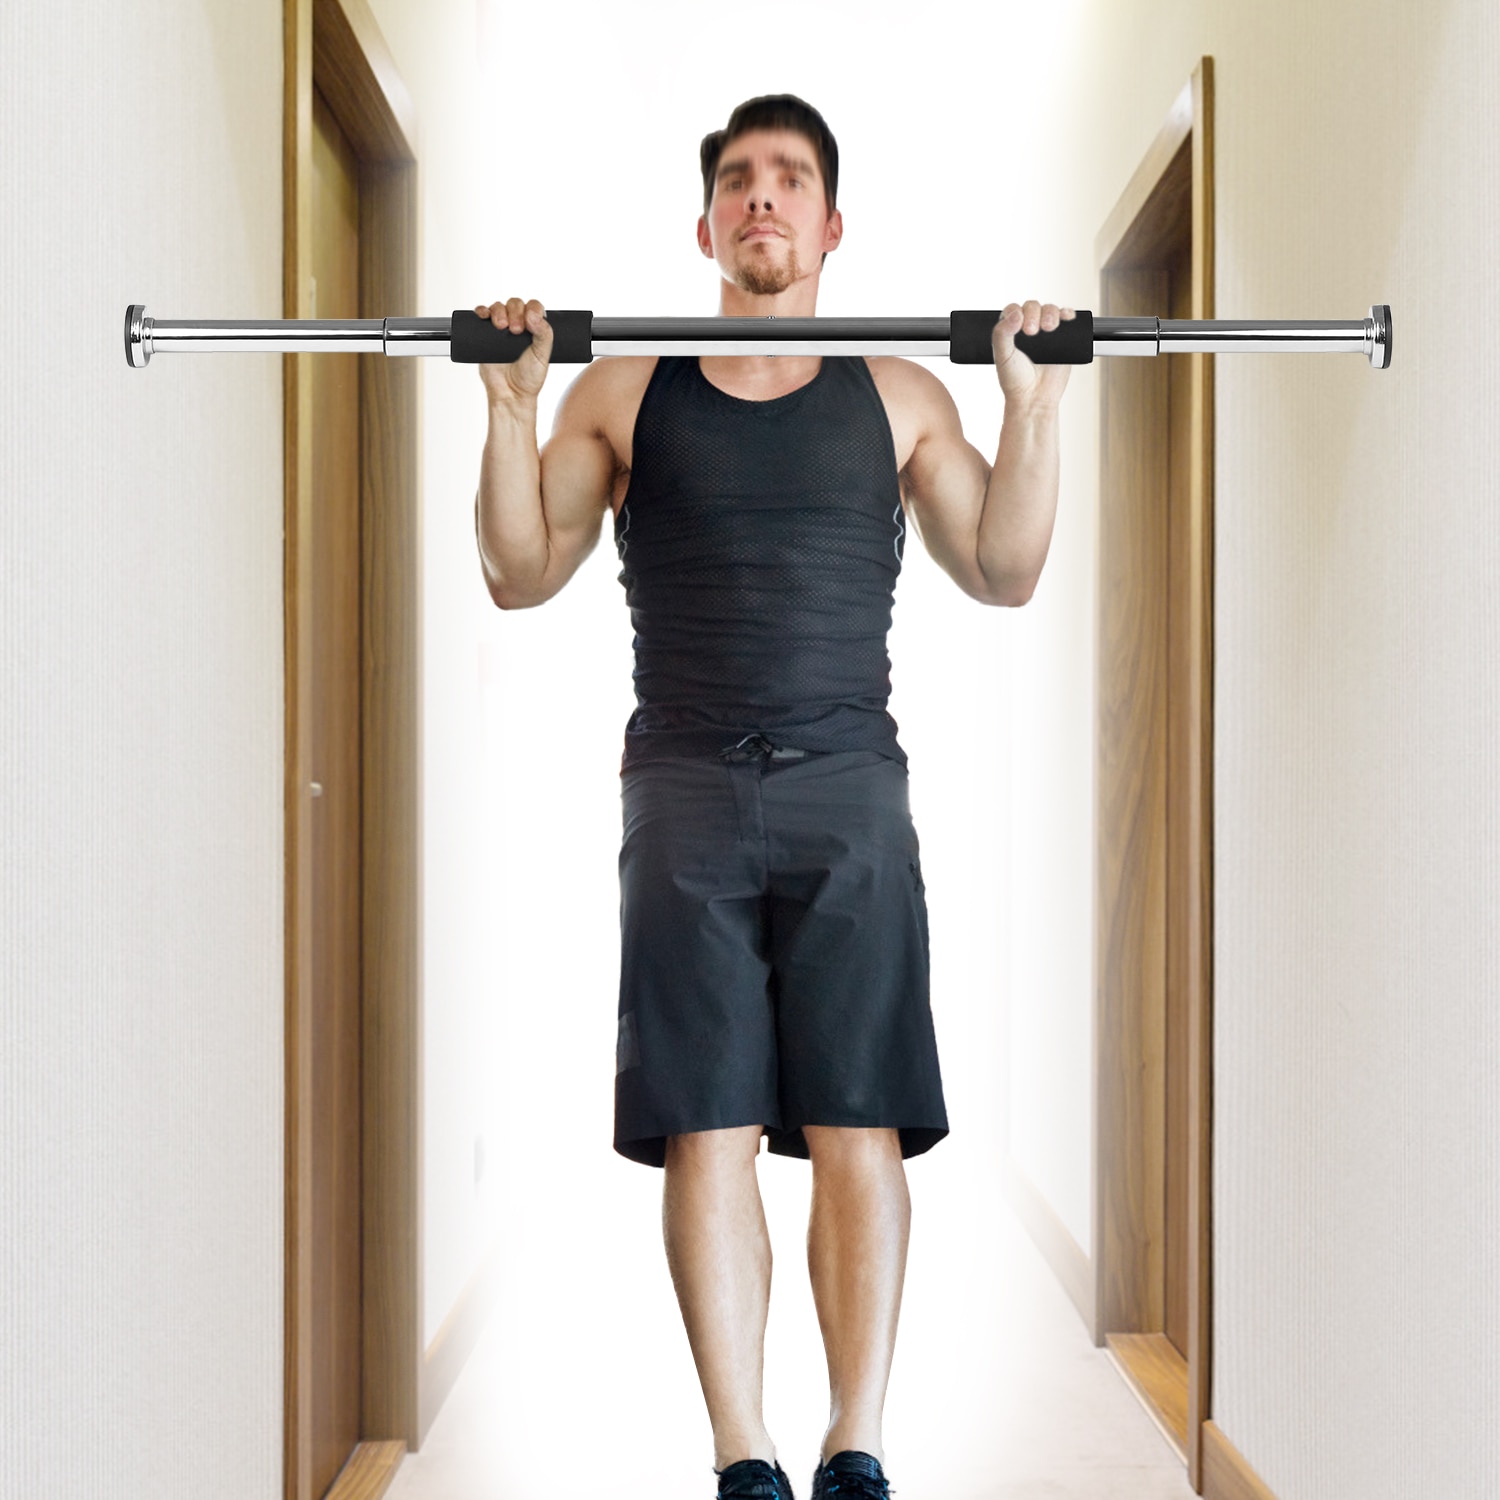 Justerbar døråbning pull up bar fitness dør måde hage op vandret hjem gym træning fitness træningsudstyr 350lb bærende gym